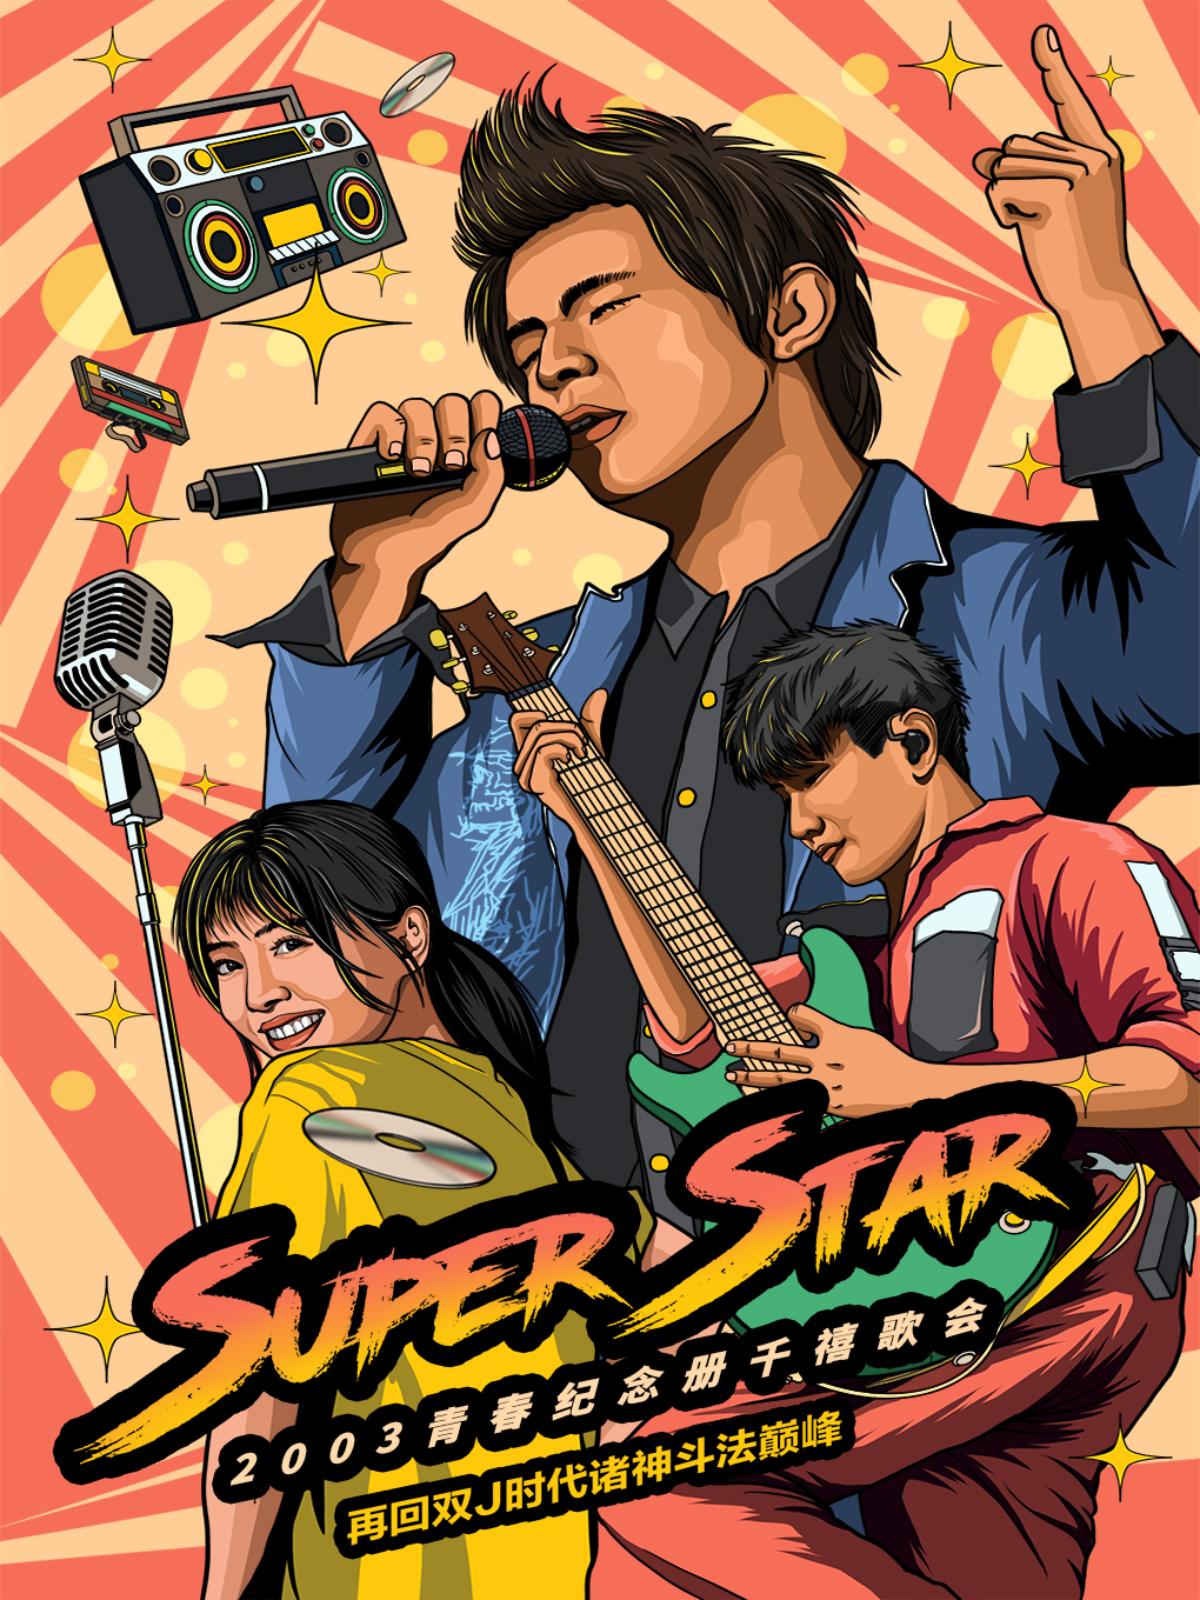 【深圳】千禧OST歌会【Super Star】---青春纪念册|如果我忘了我 LVH